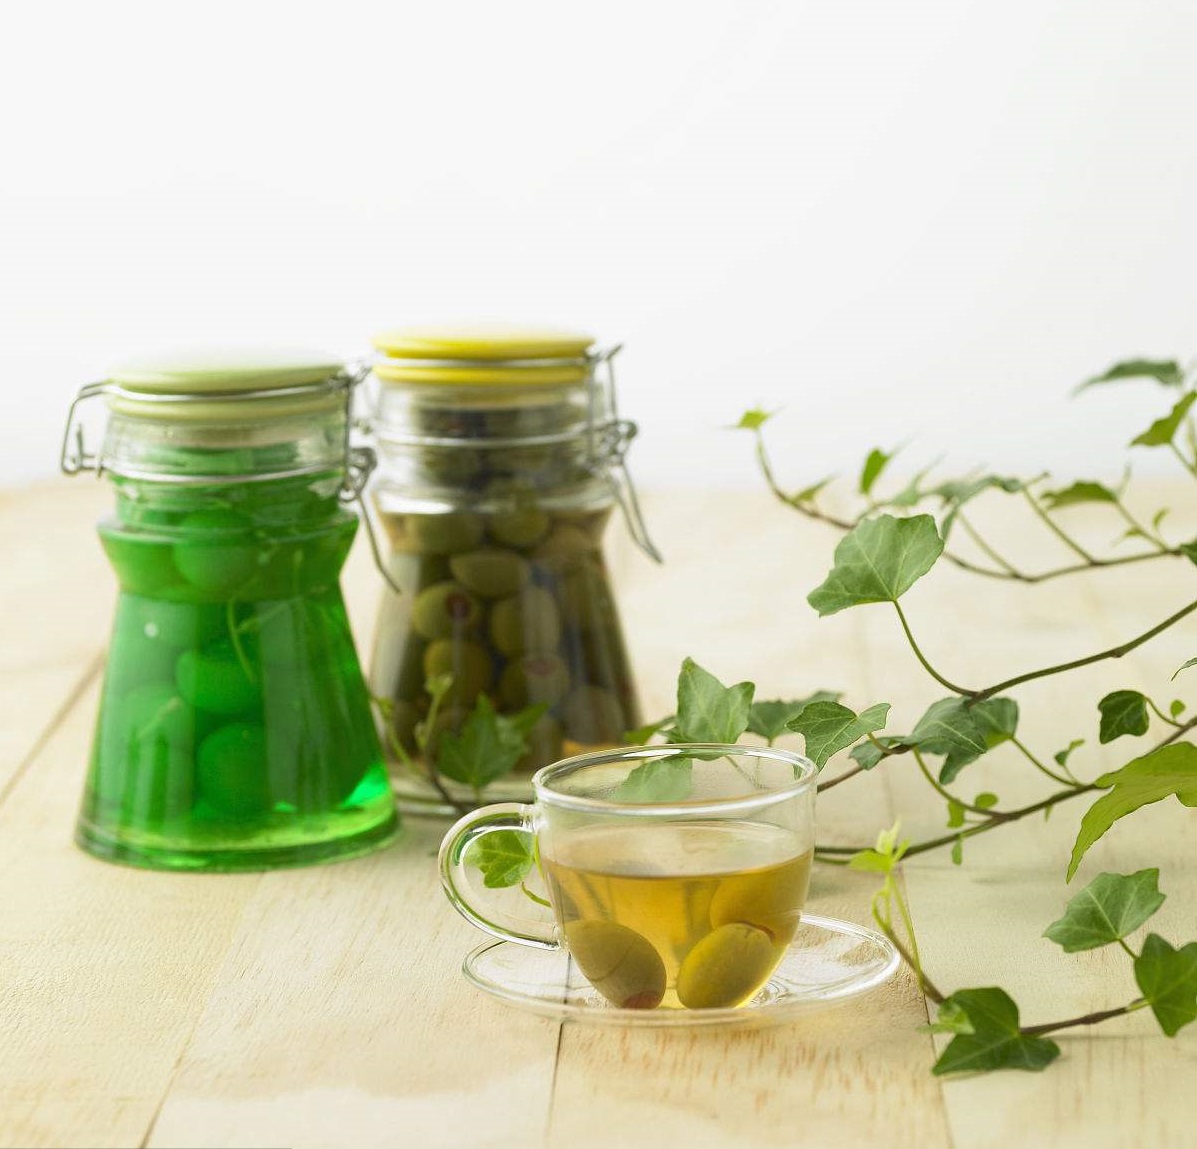 橄榄茶具有较强的清热解毒,凉血利咽功效,对于咽部红肿热痛具有明显